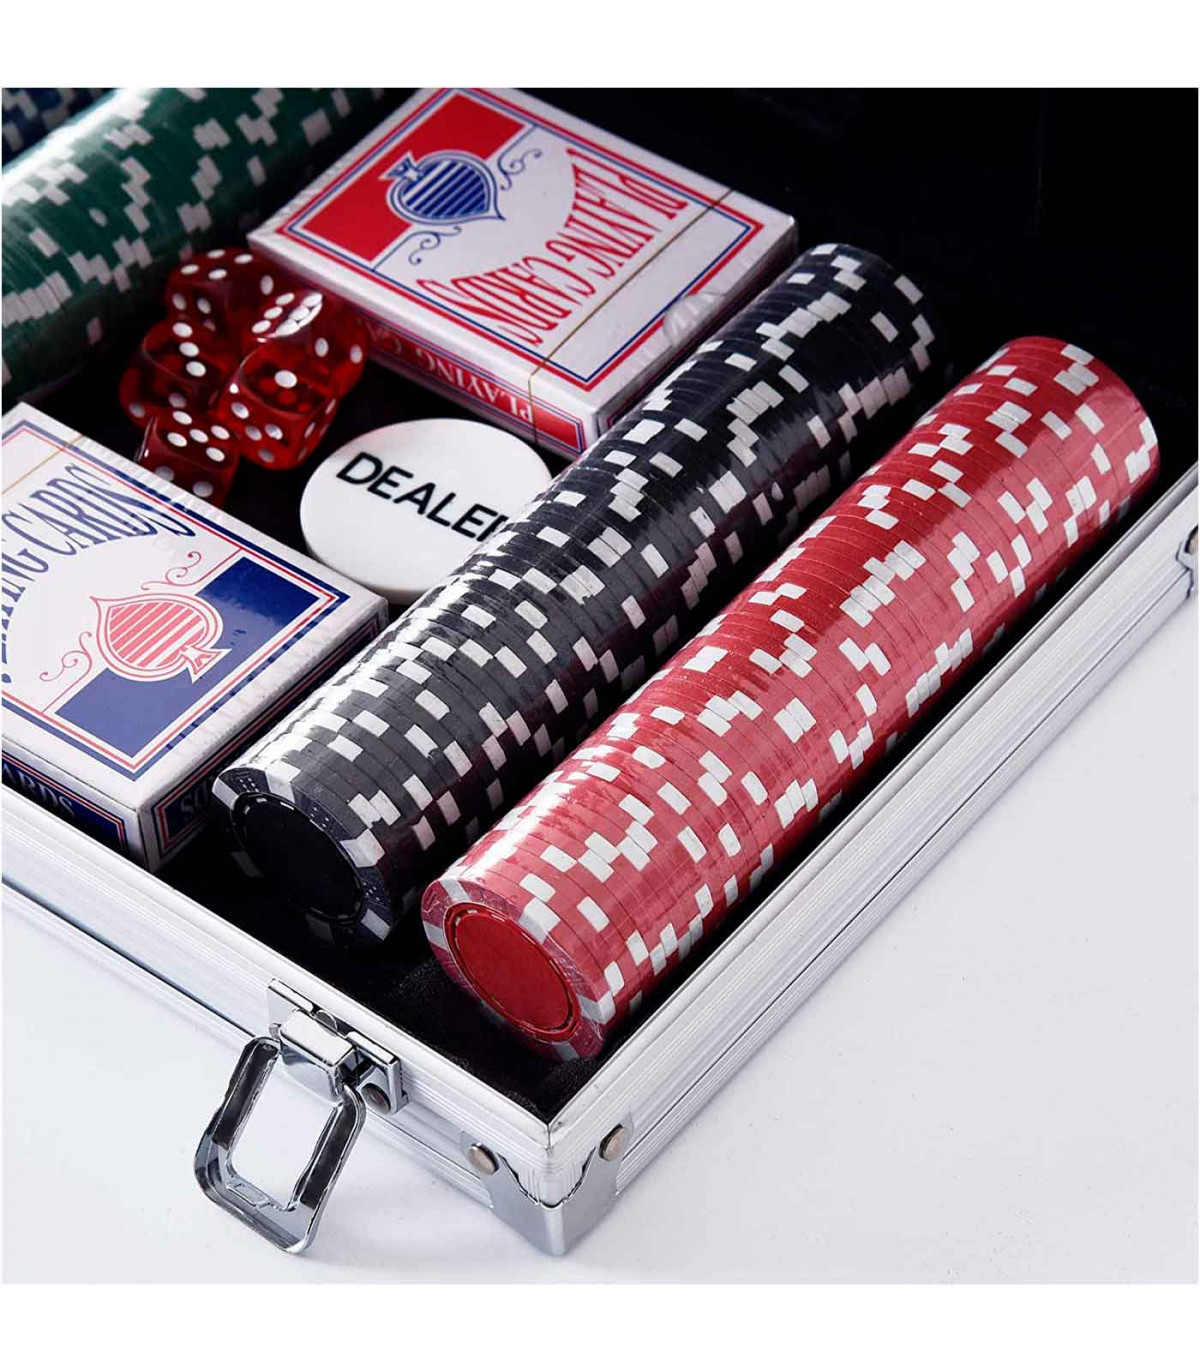 Tradineur - Juego de póker con 200 piezas - Fichas de 11,5 gramos